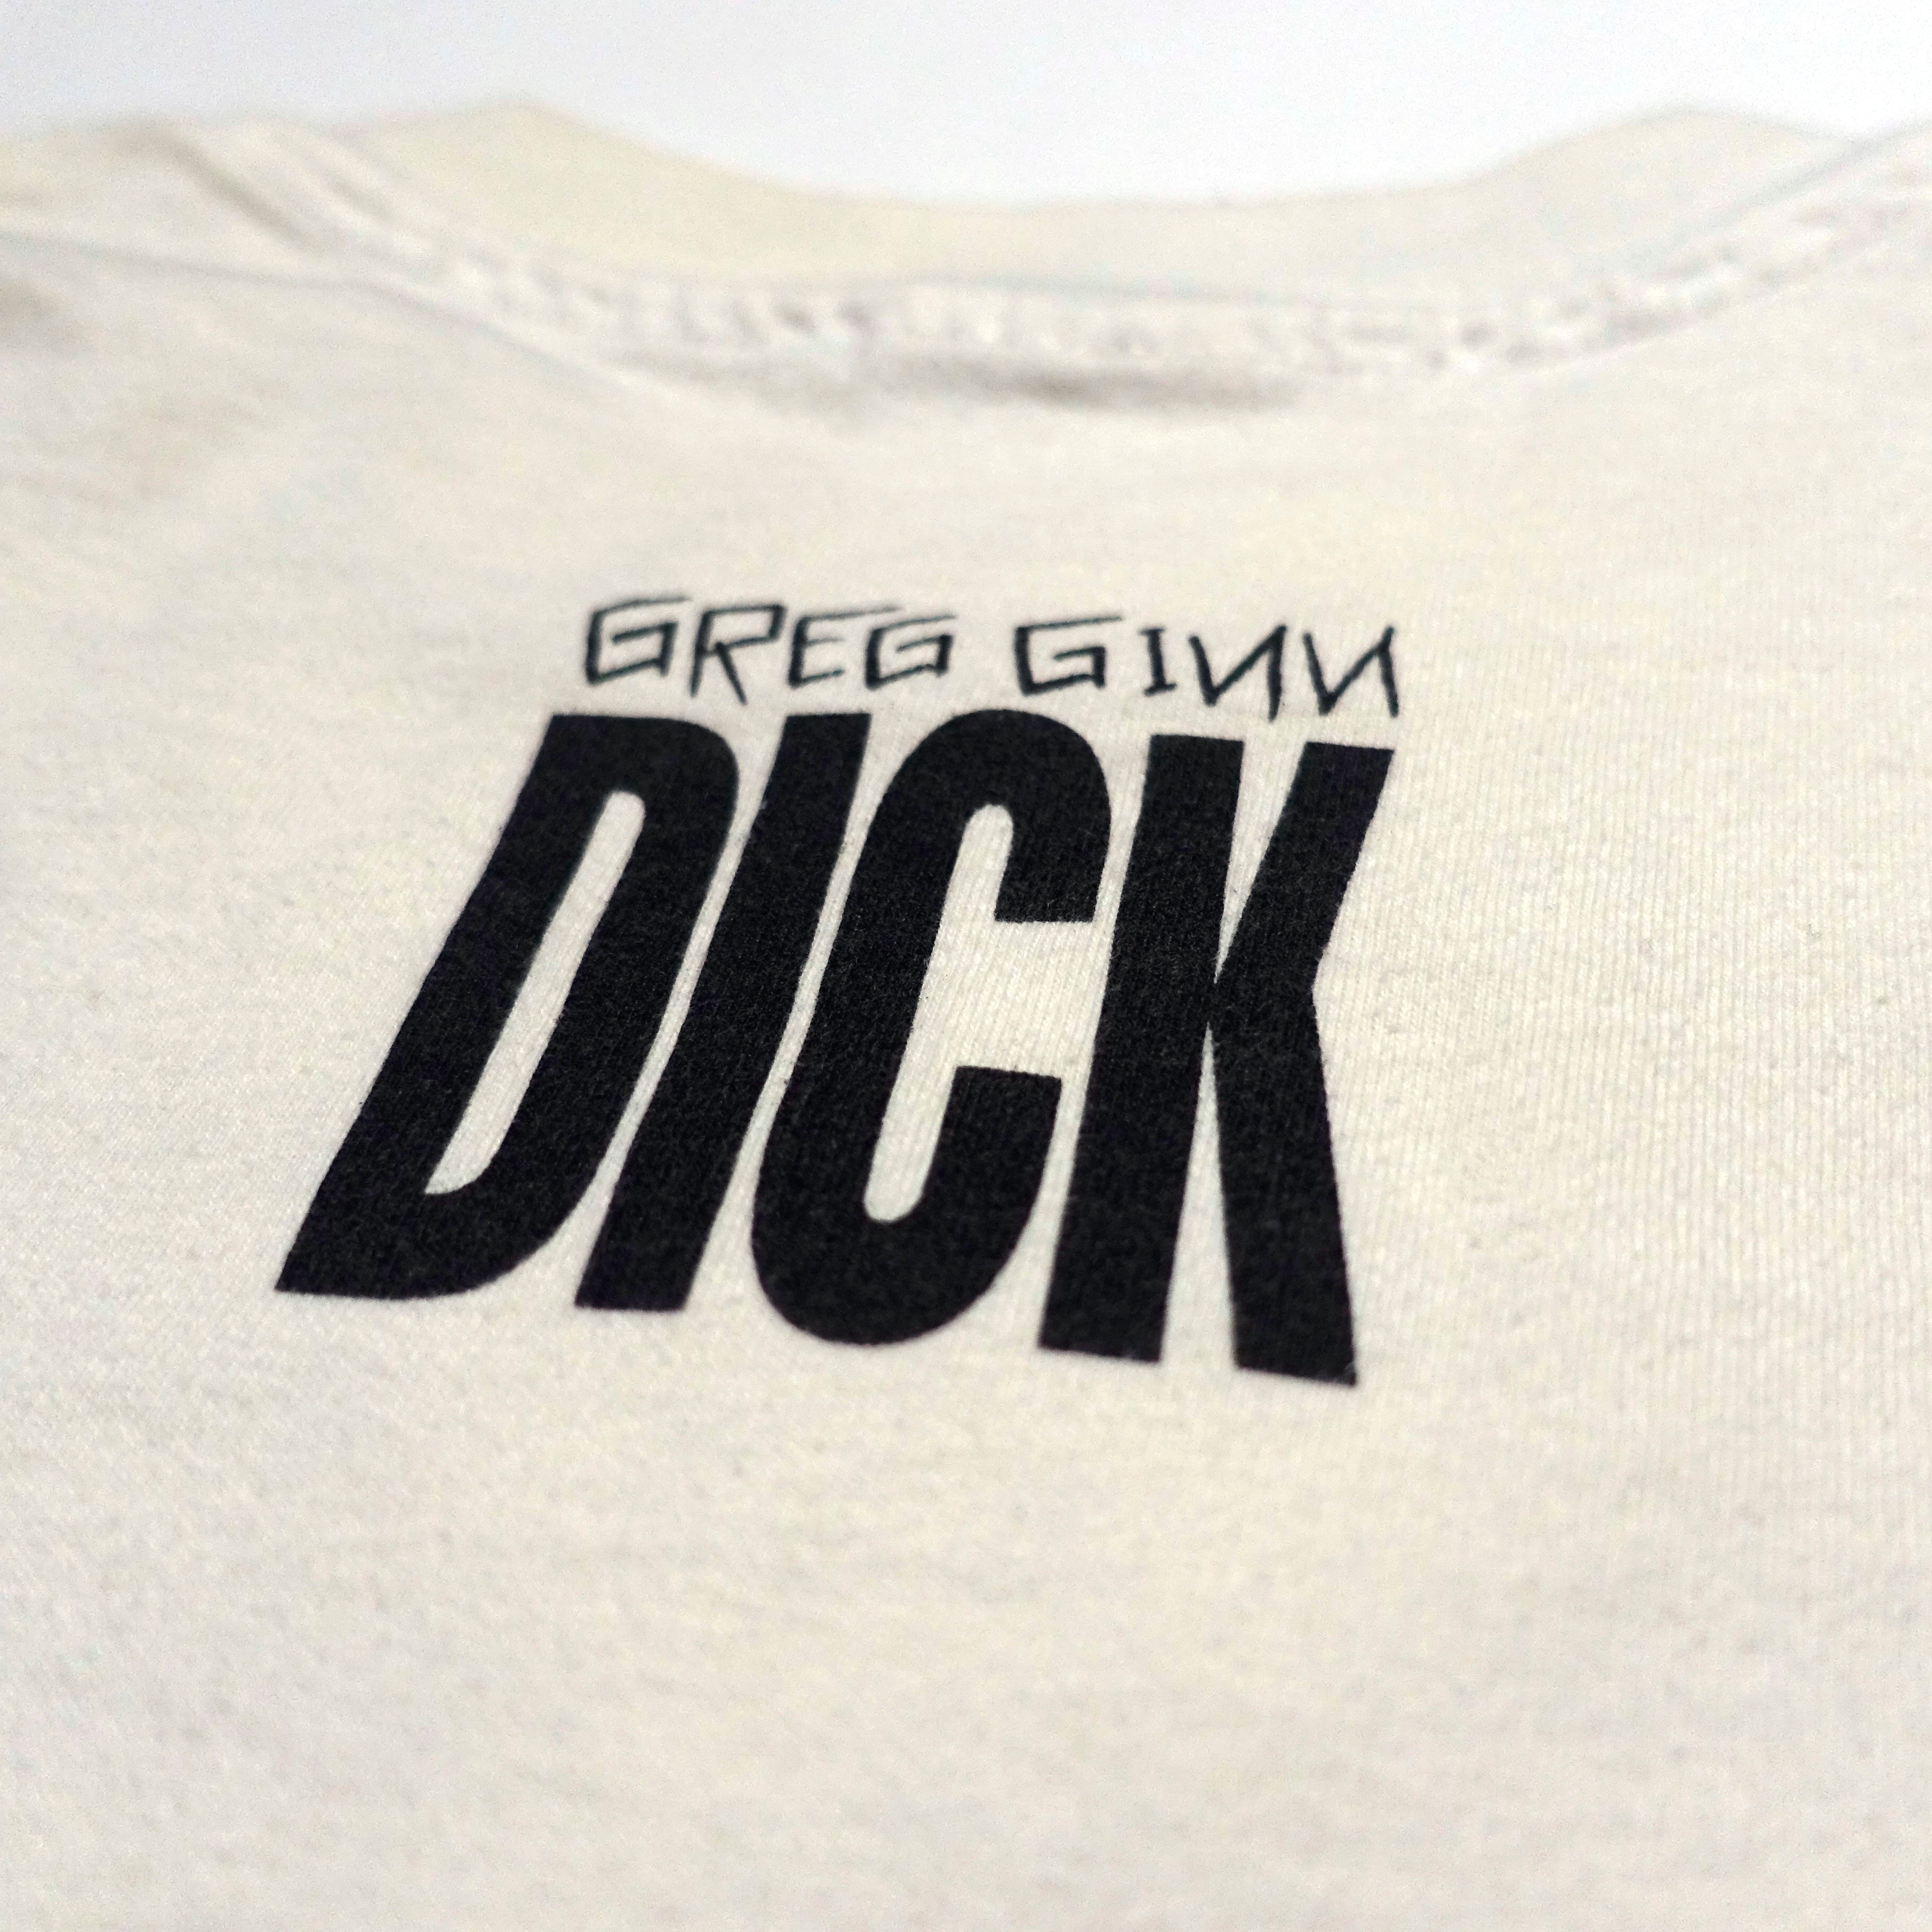 Greg Ginn - Dick Tour Shirt Size X-Large